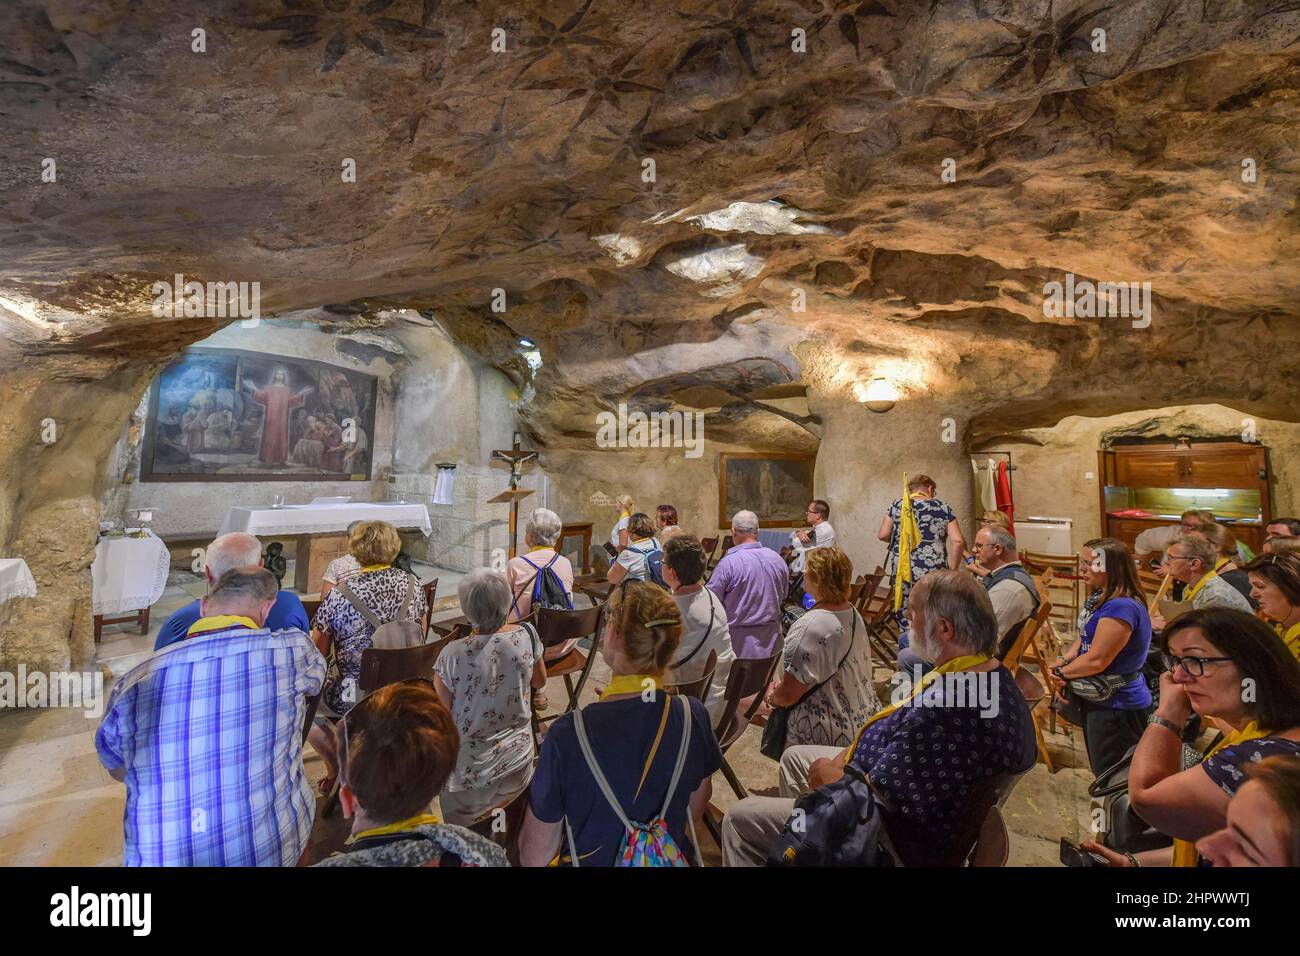 Catholics' Grotto of Betrayal, Mount of Olives, Jerusalem, Israel Stock Photo